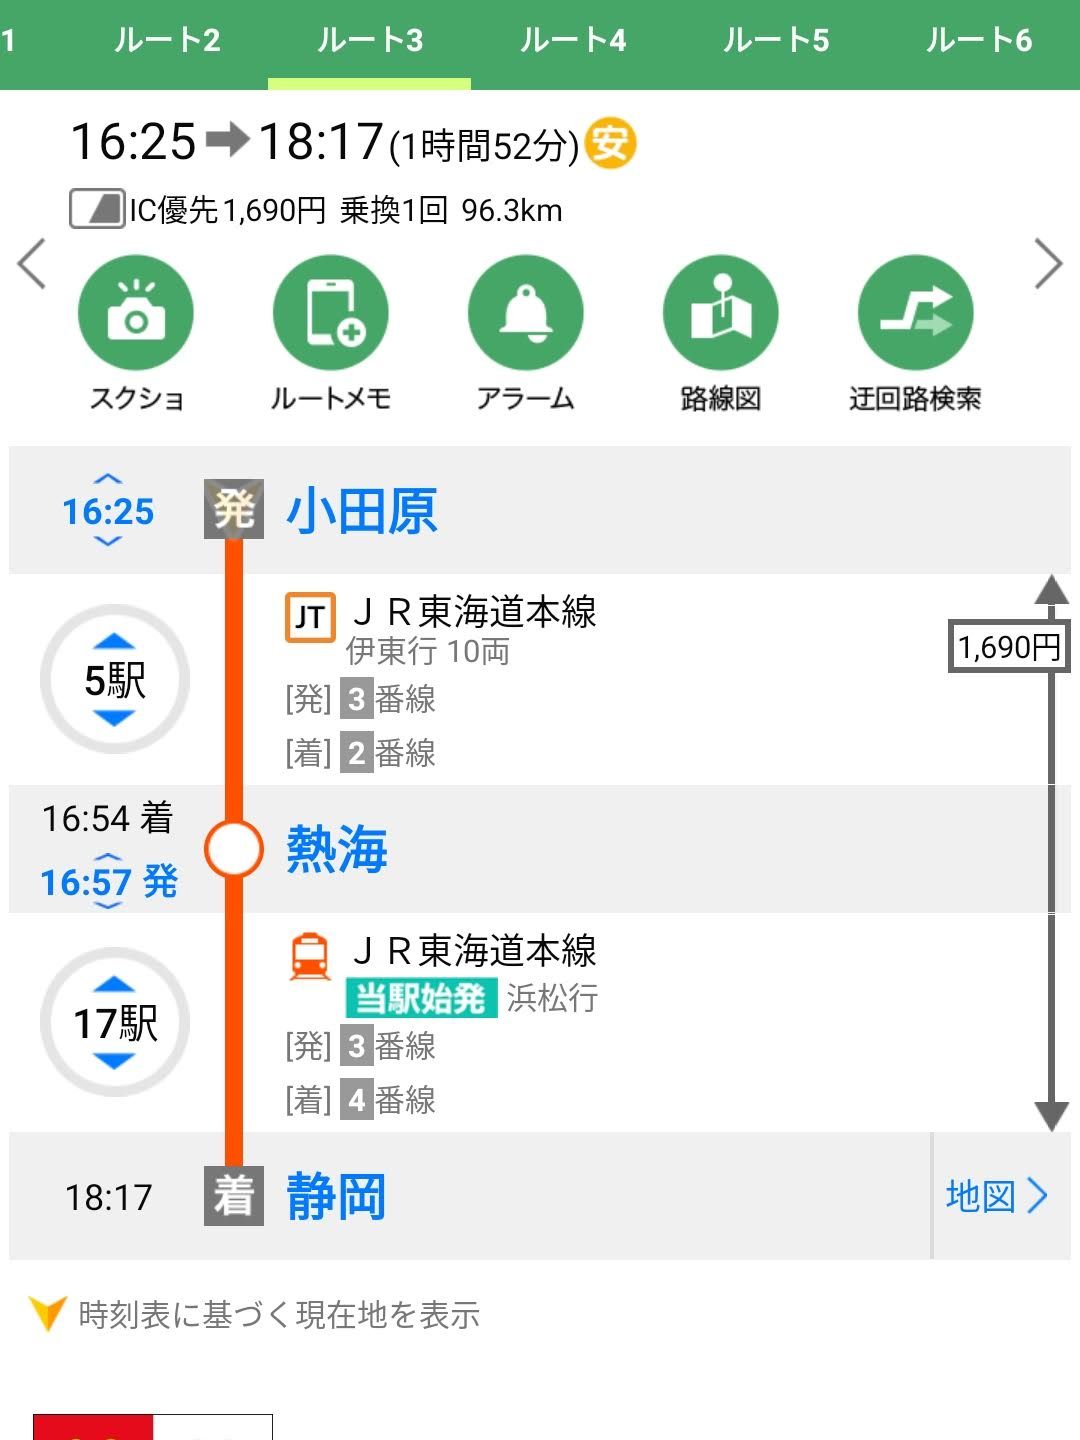 静岡駅への所要時間